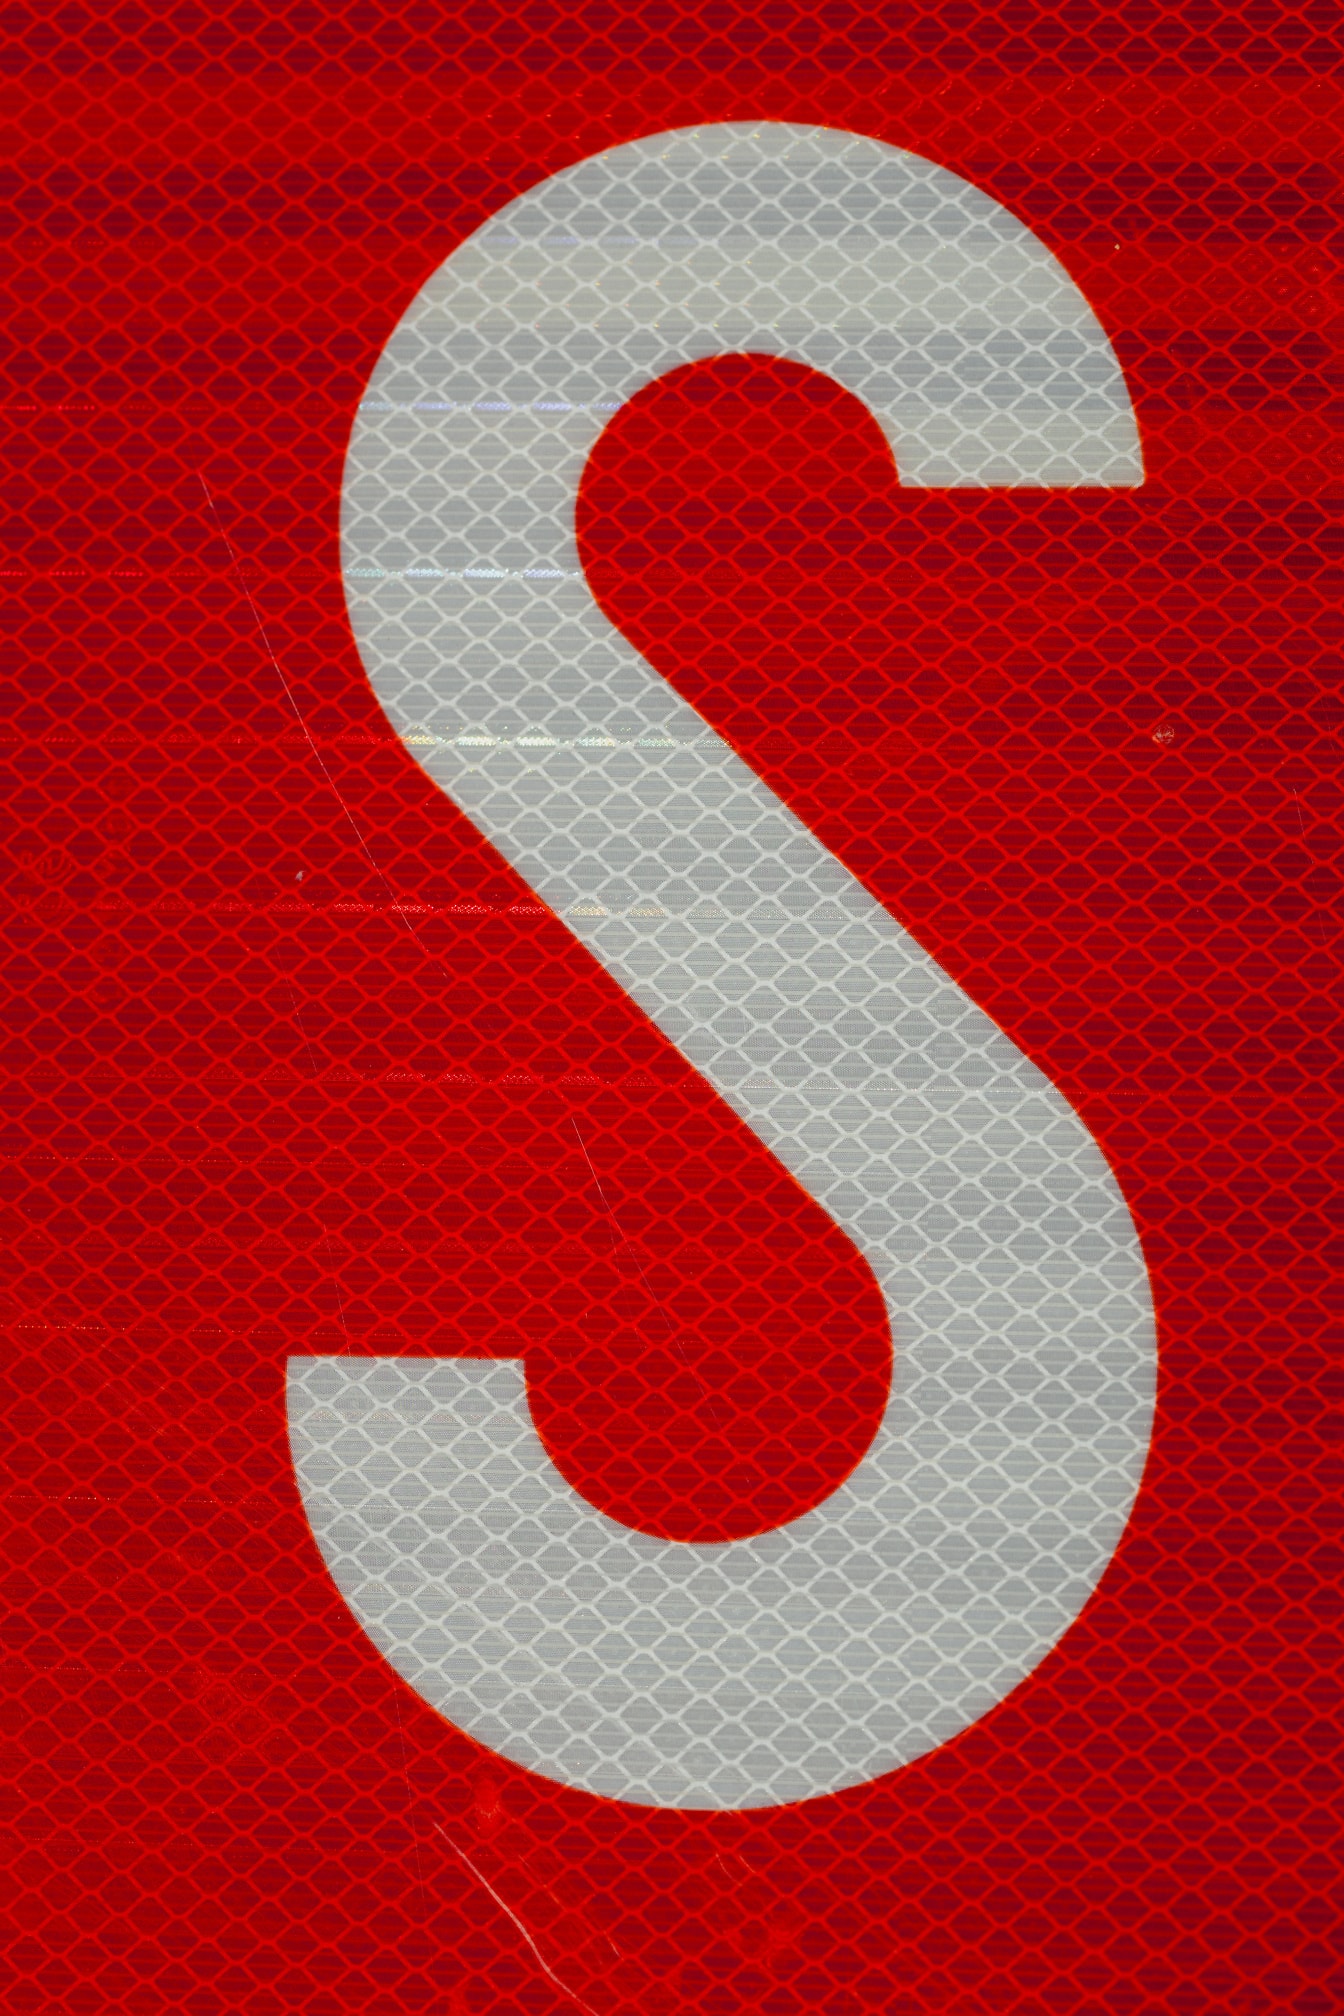 Biểu tượng S trắng trên nền huỳnh quang màu đỏ sẫm